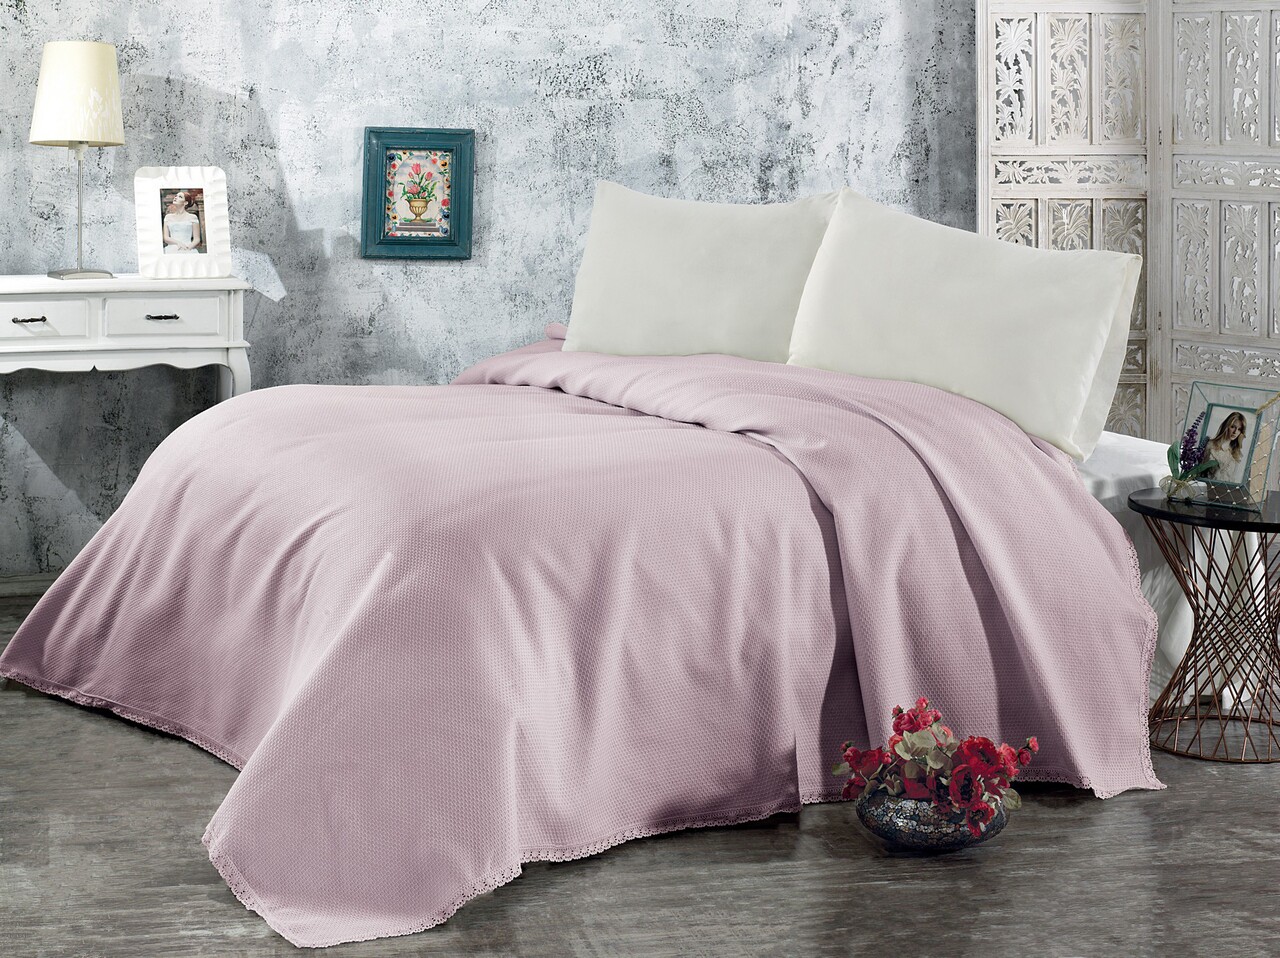 Pique kétszemélyes ágytakaró, 220x240 cm, 100% pamut, sude, whitney, púder rózsaszín